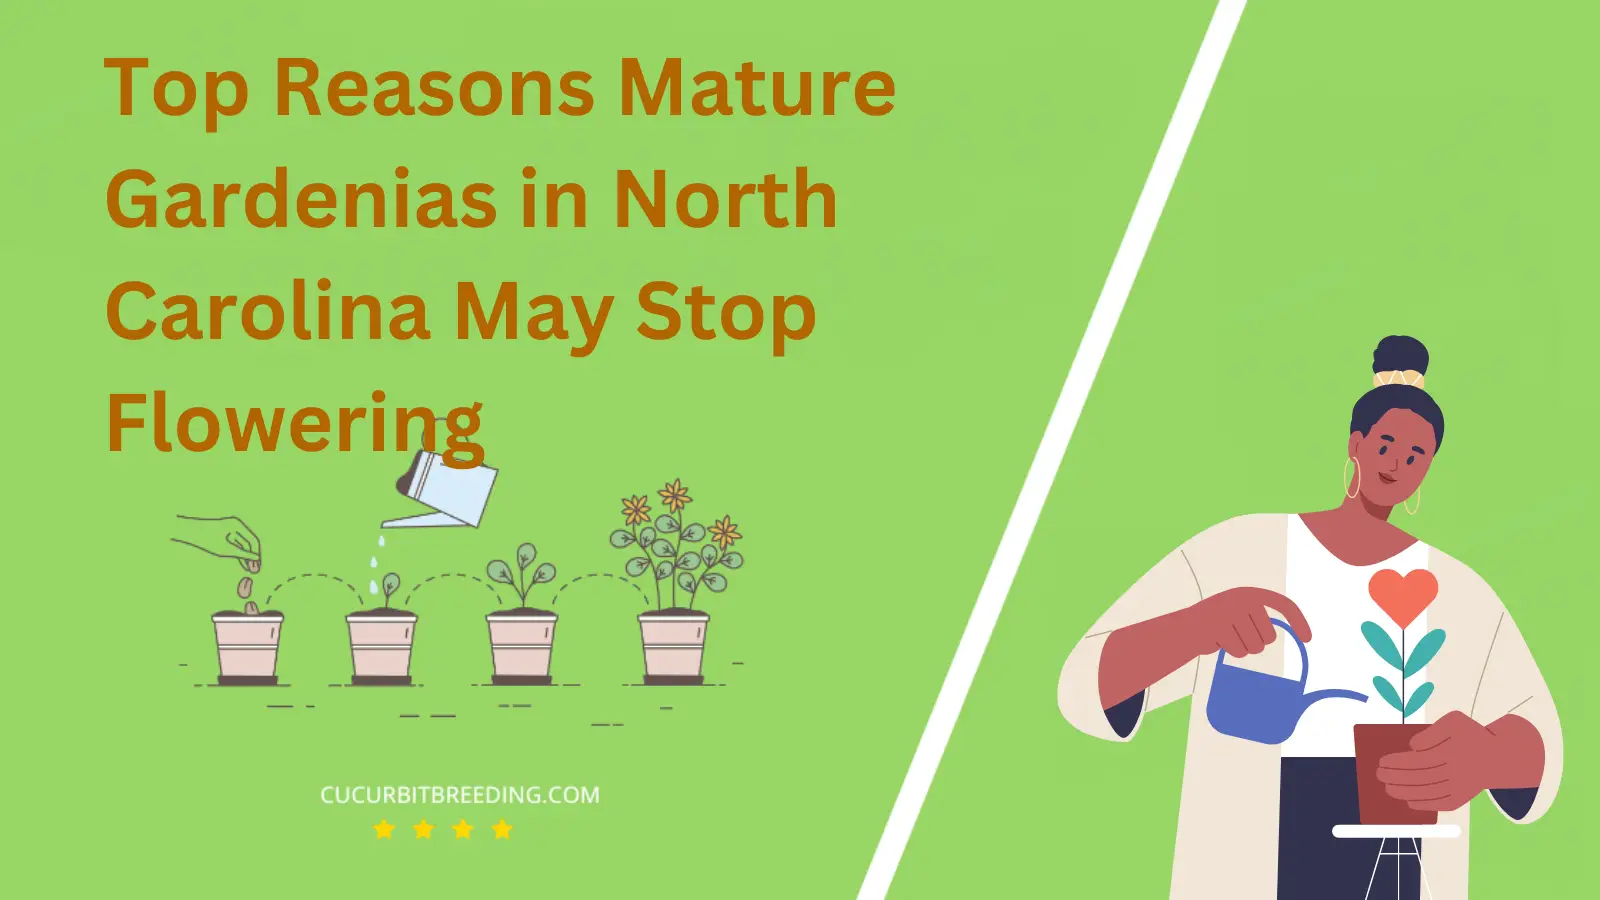 Top Reasons Mature Gardenias in North Carolina May Stop Flowering